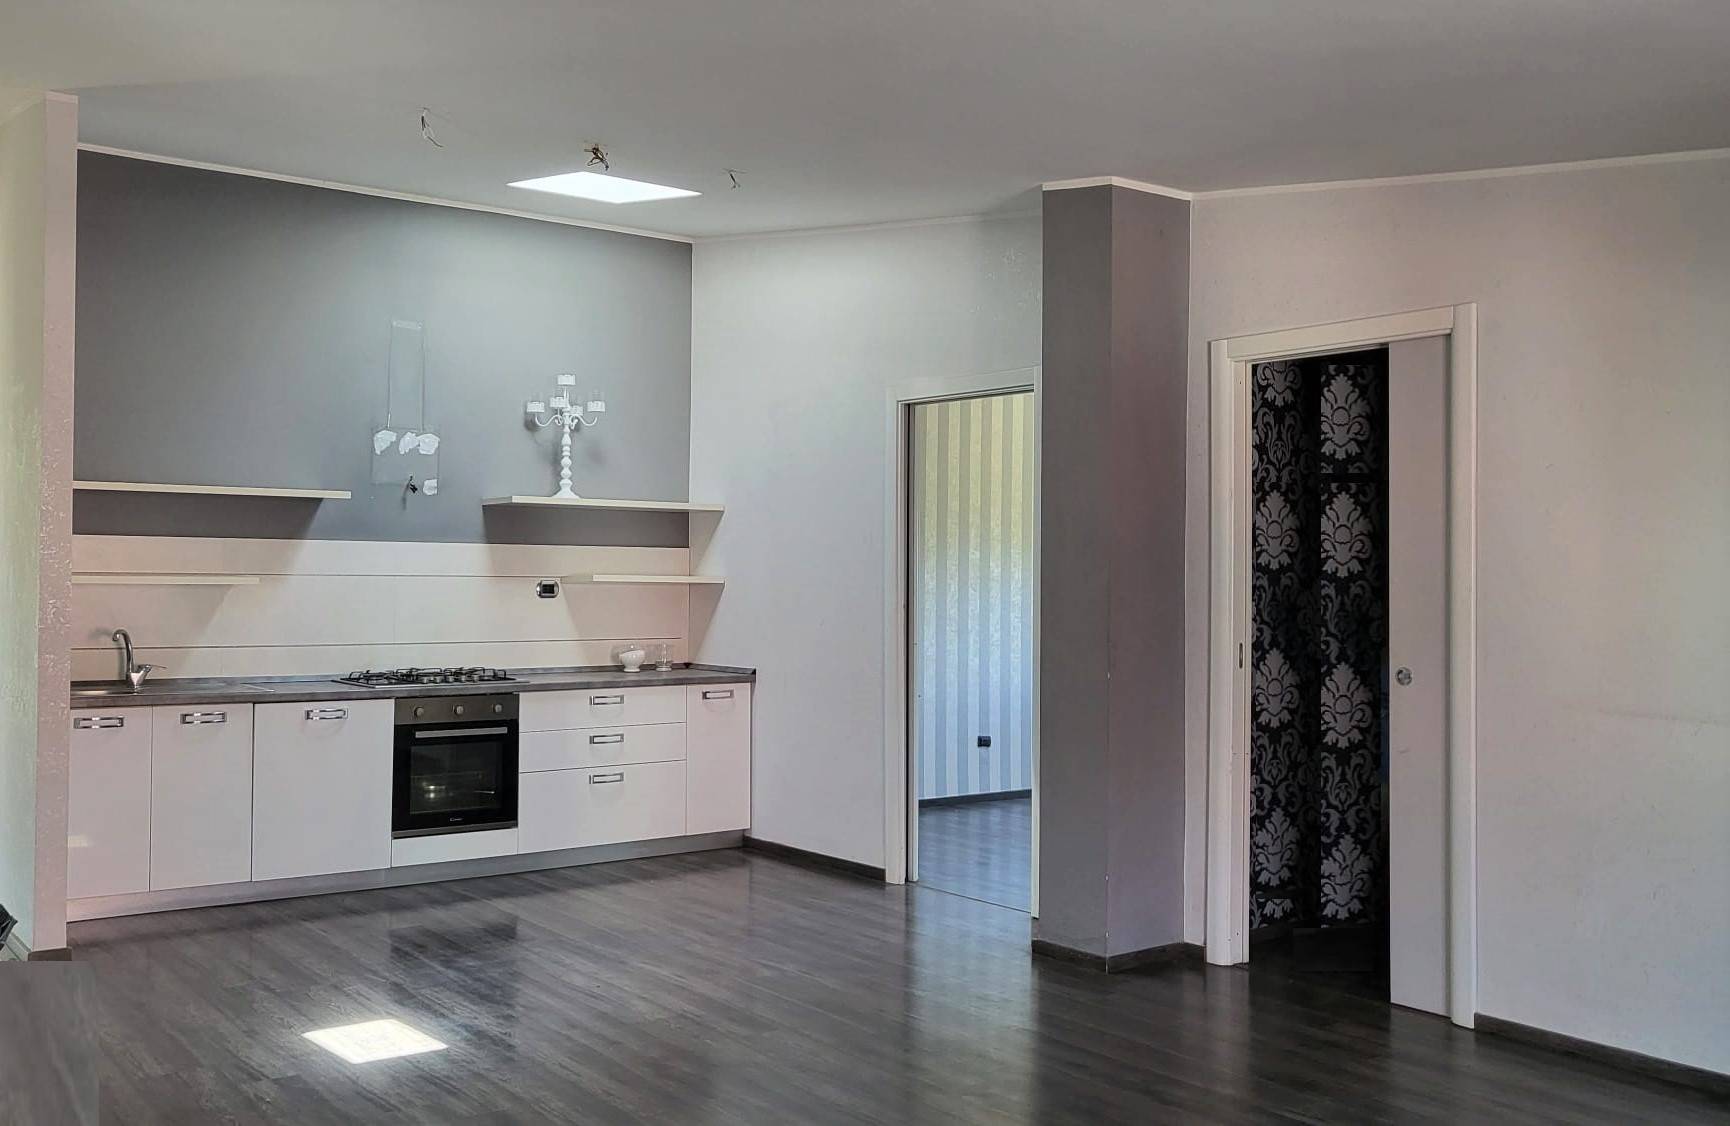 Appartamento in vendita a Montalto Uffugo, 3 locali, zona Località: SETTIMO, prezzo € 73.000 | CambioCasa.it